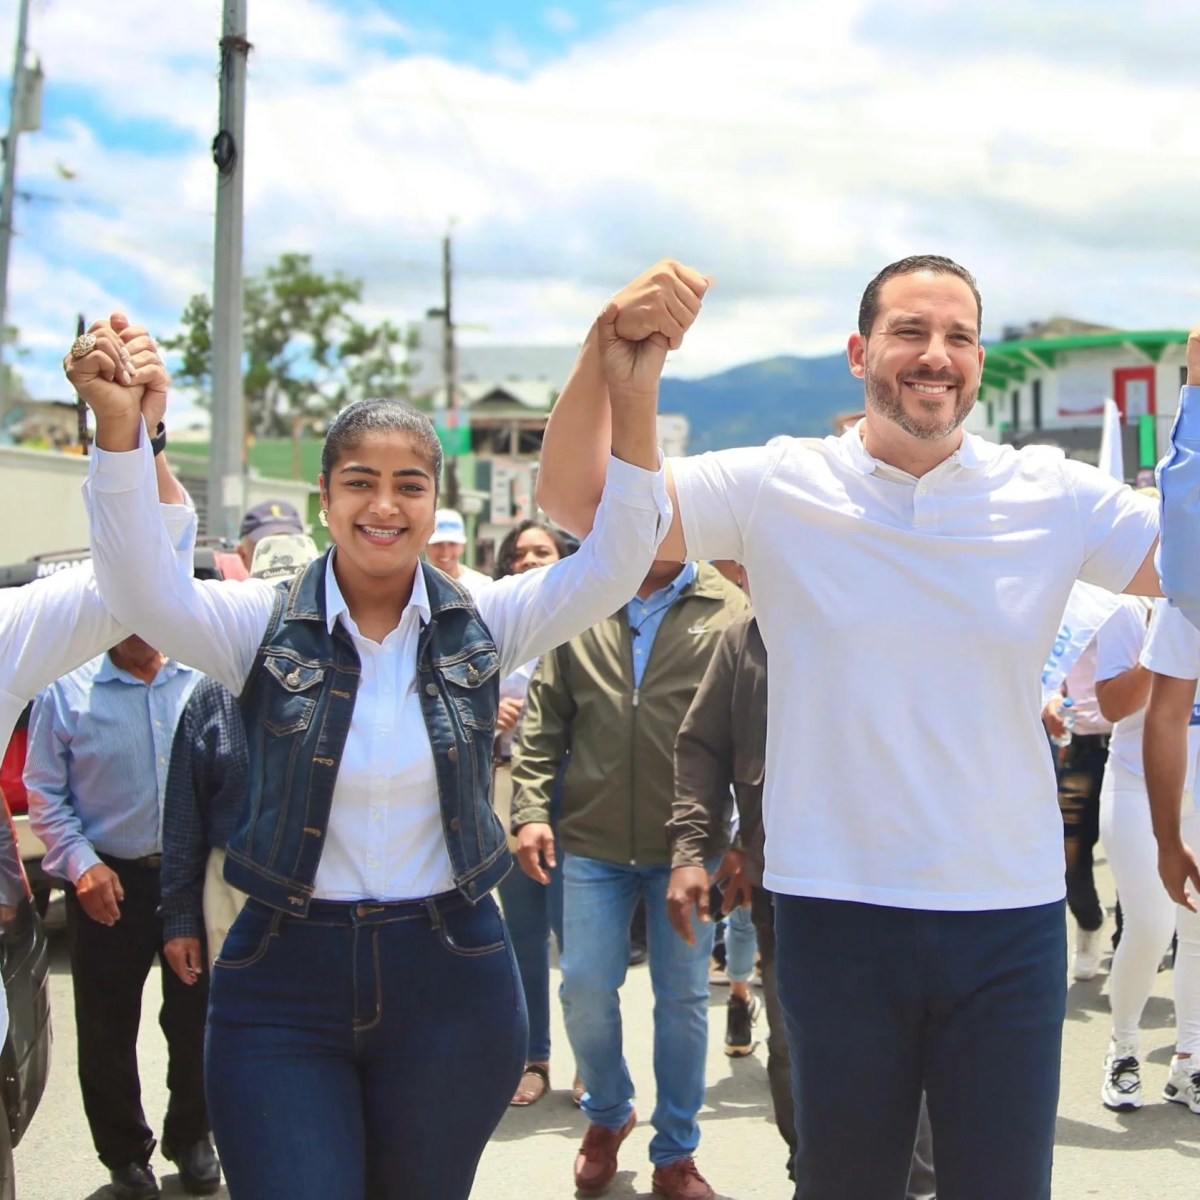 “si los jóvenes votan en masa habrá segunda vuelta” –  (República Dominicana)